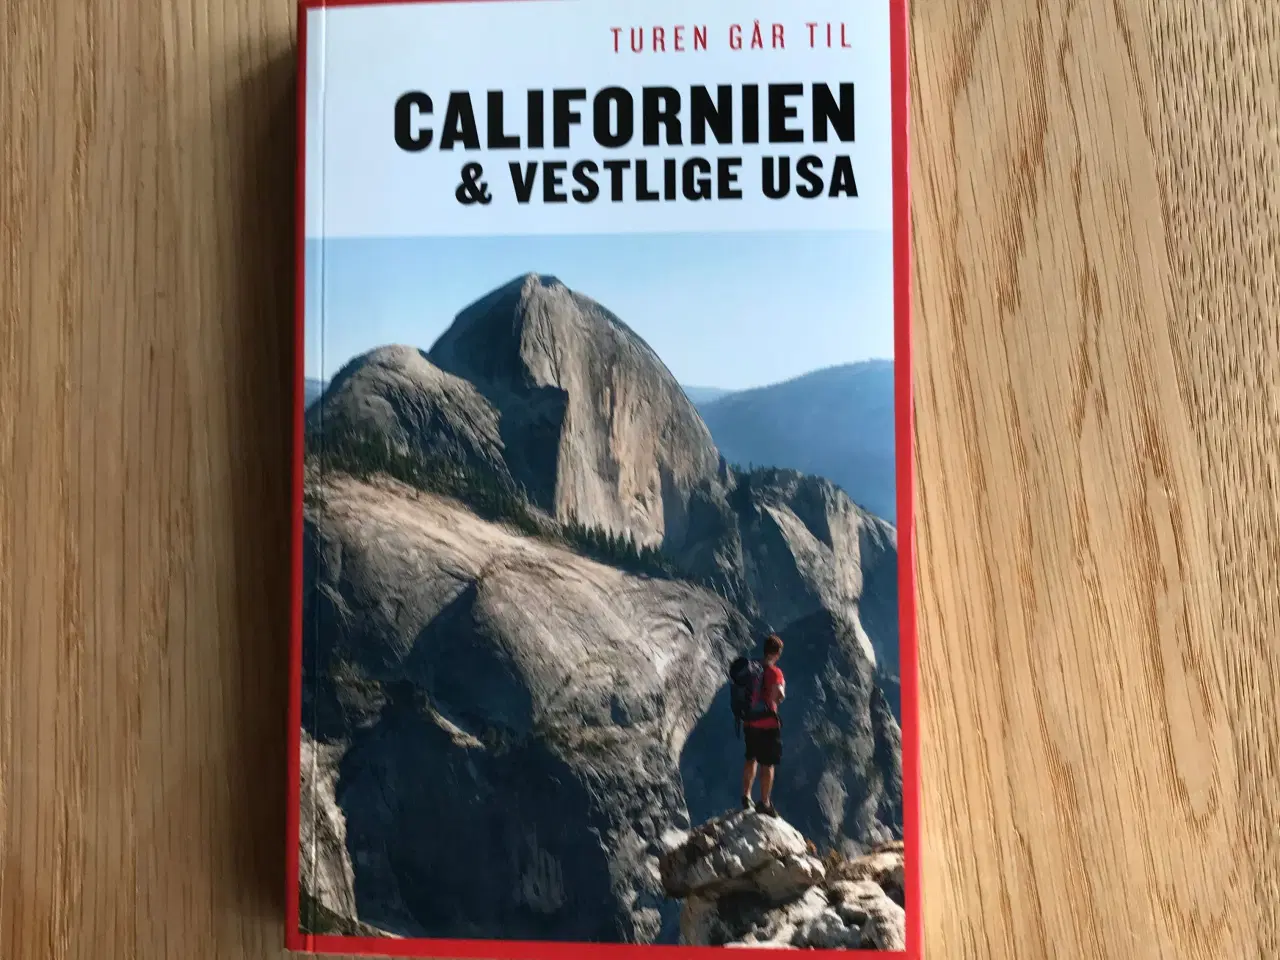 Billede 1 - Turen går til Californien & Vestlige USA